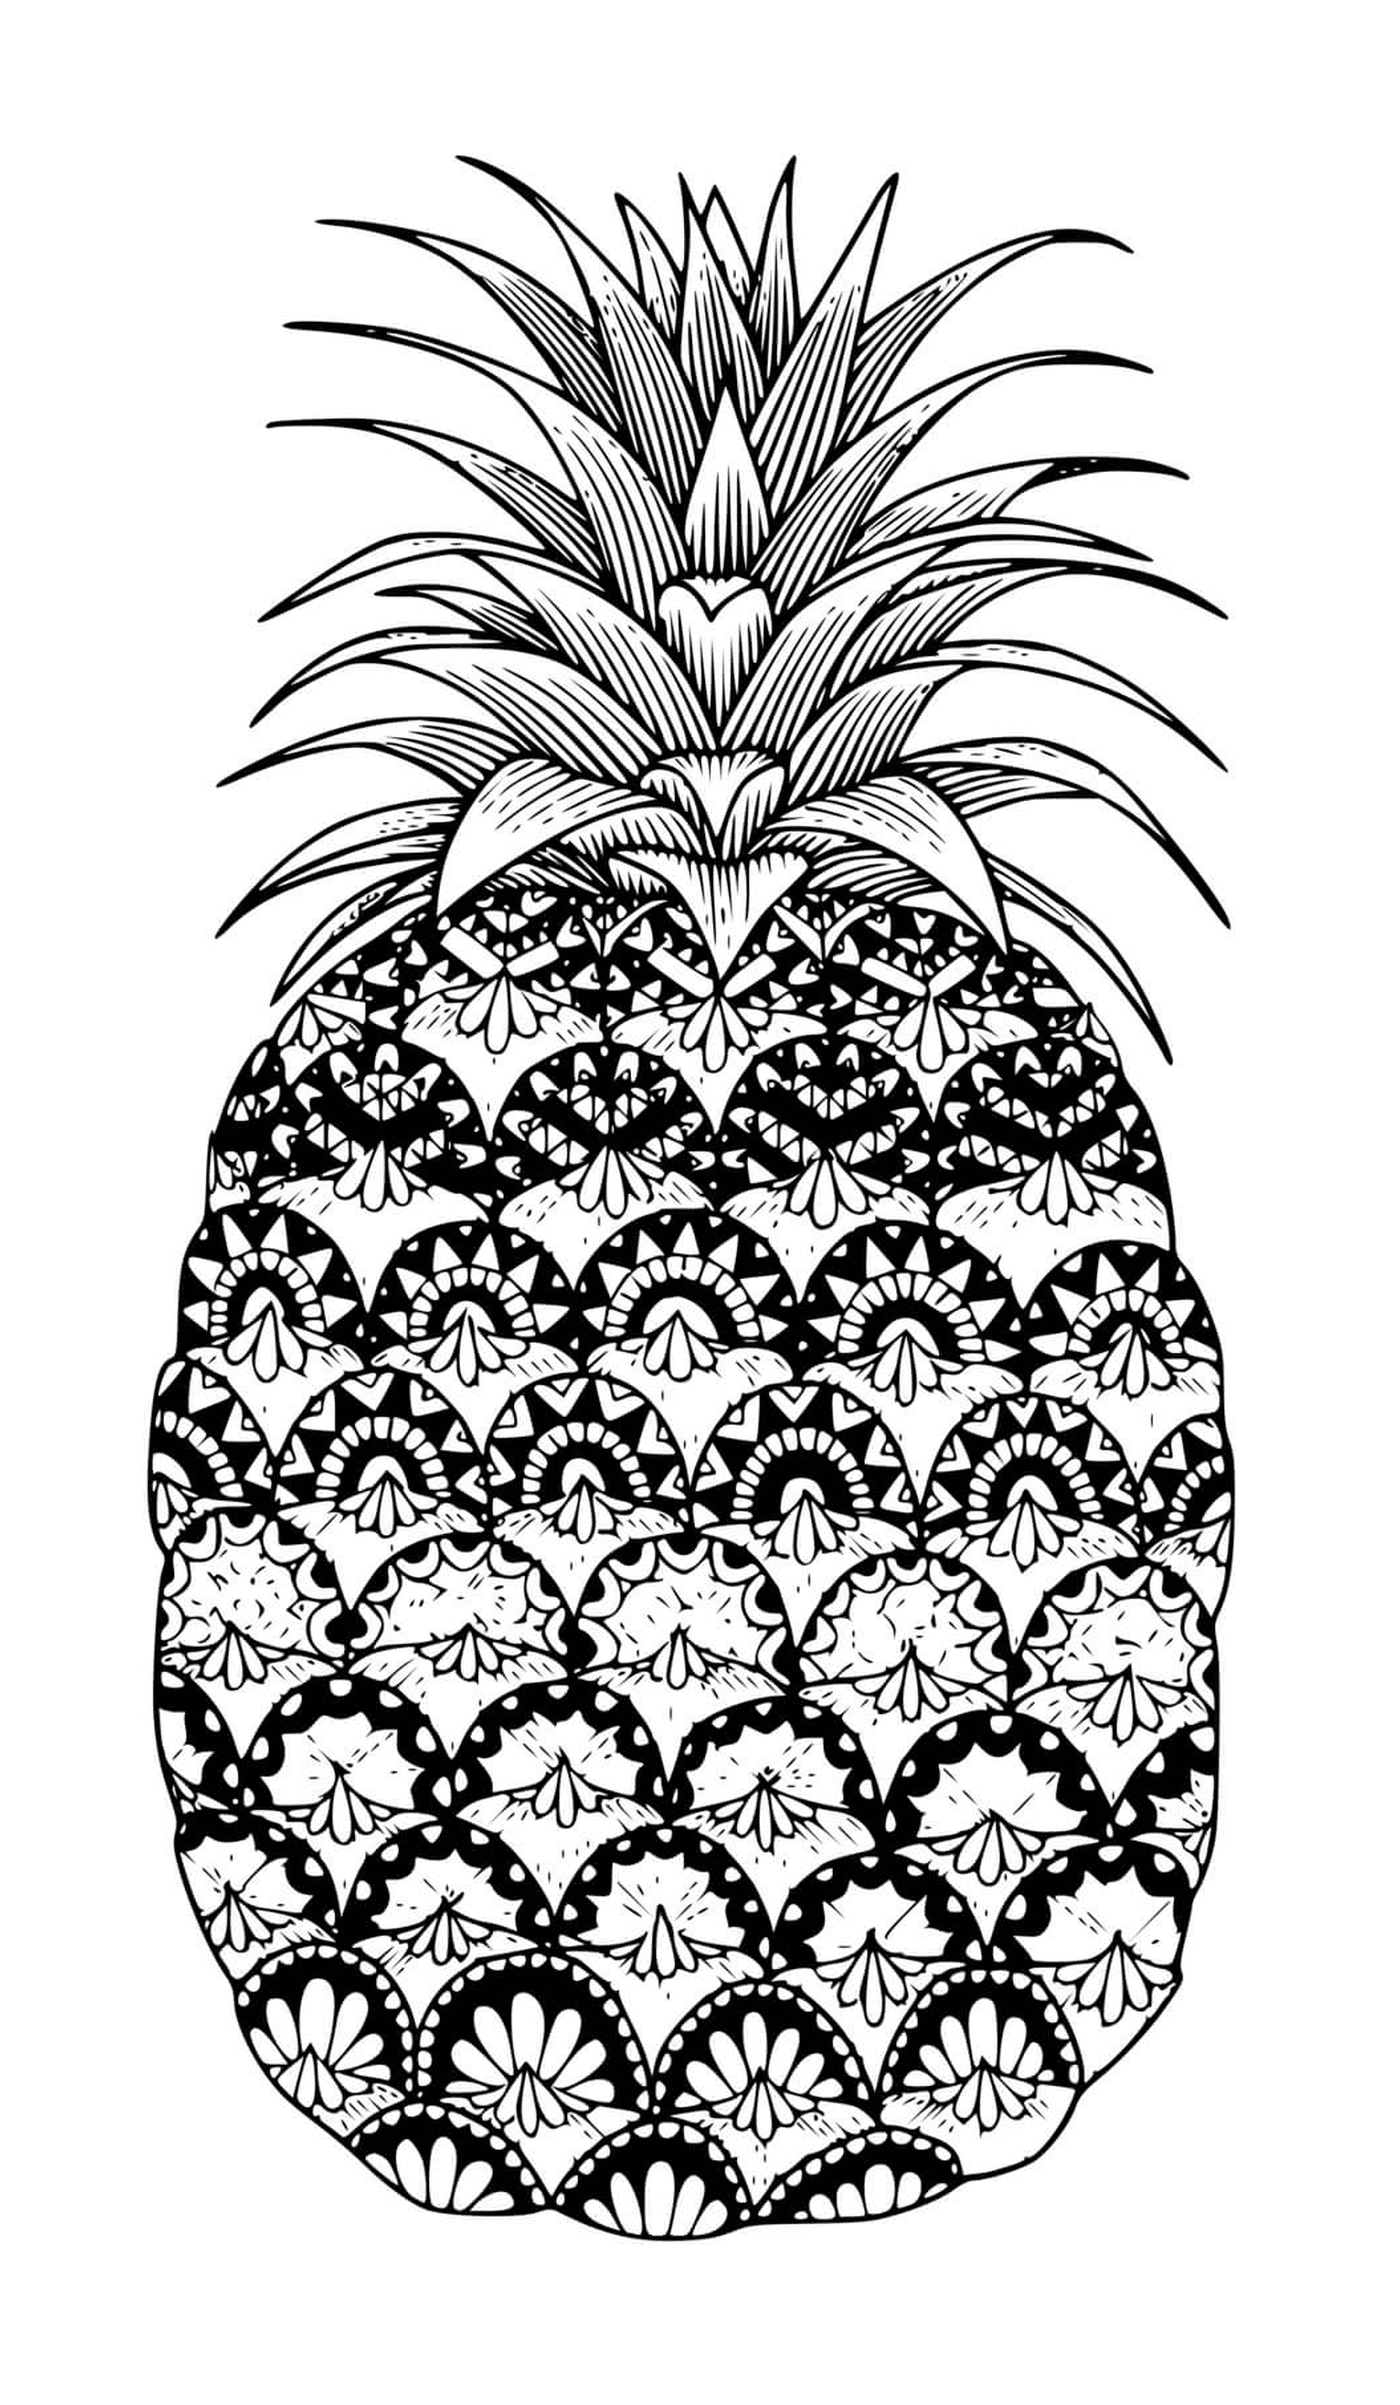  A zentangle mandala of a fruit pineapple 